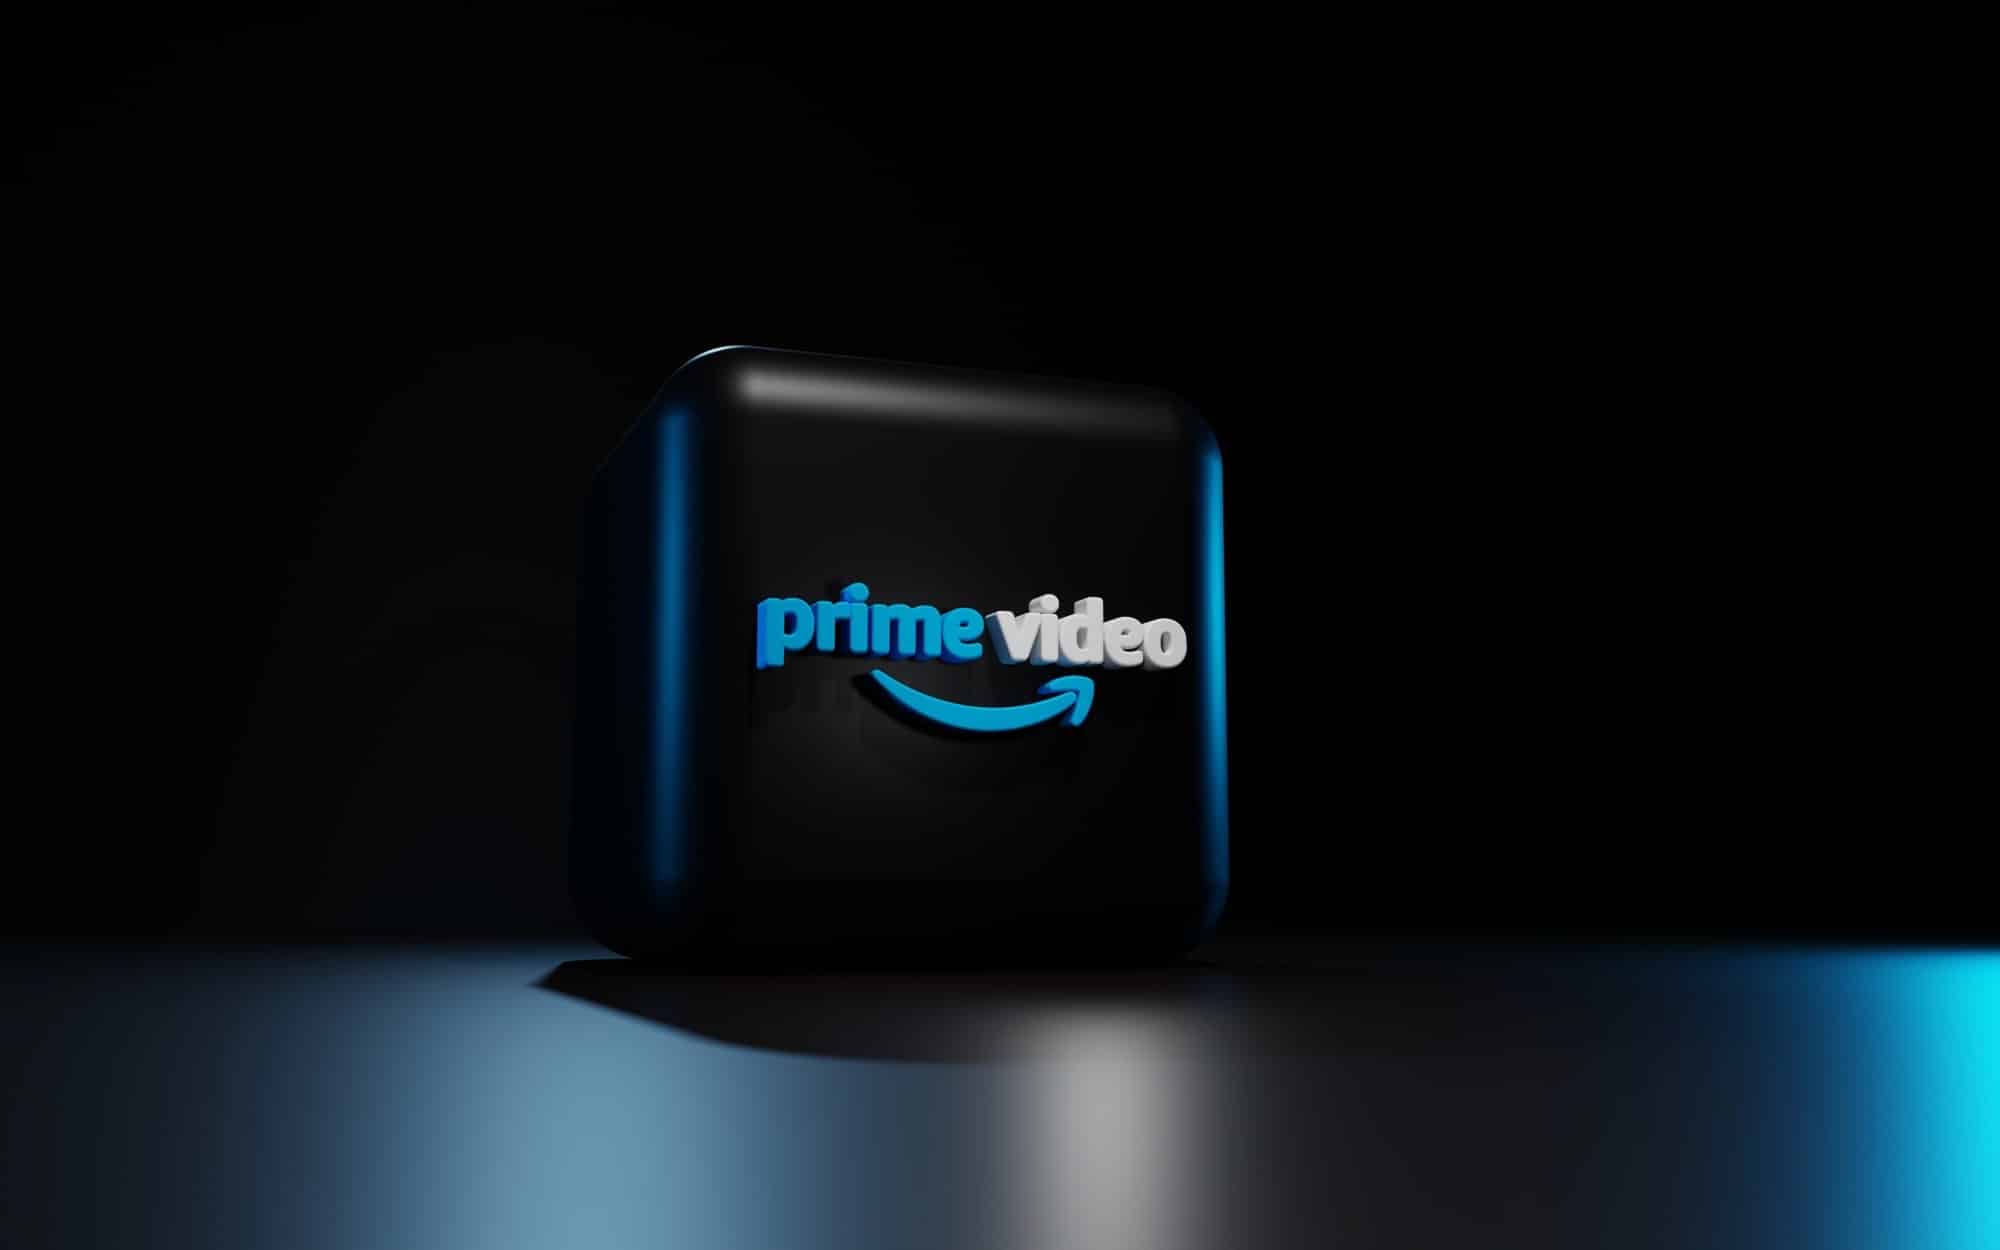 Das Amazon Prime Video Logo auf einem 3D Würfel in dunkler Optik